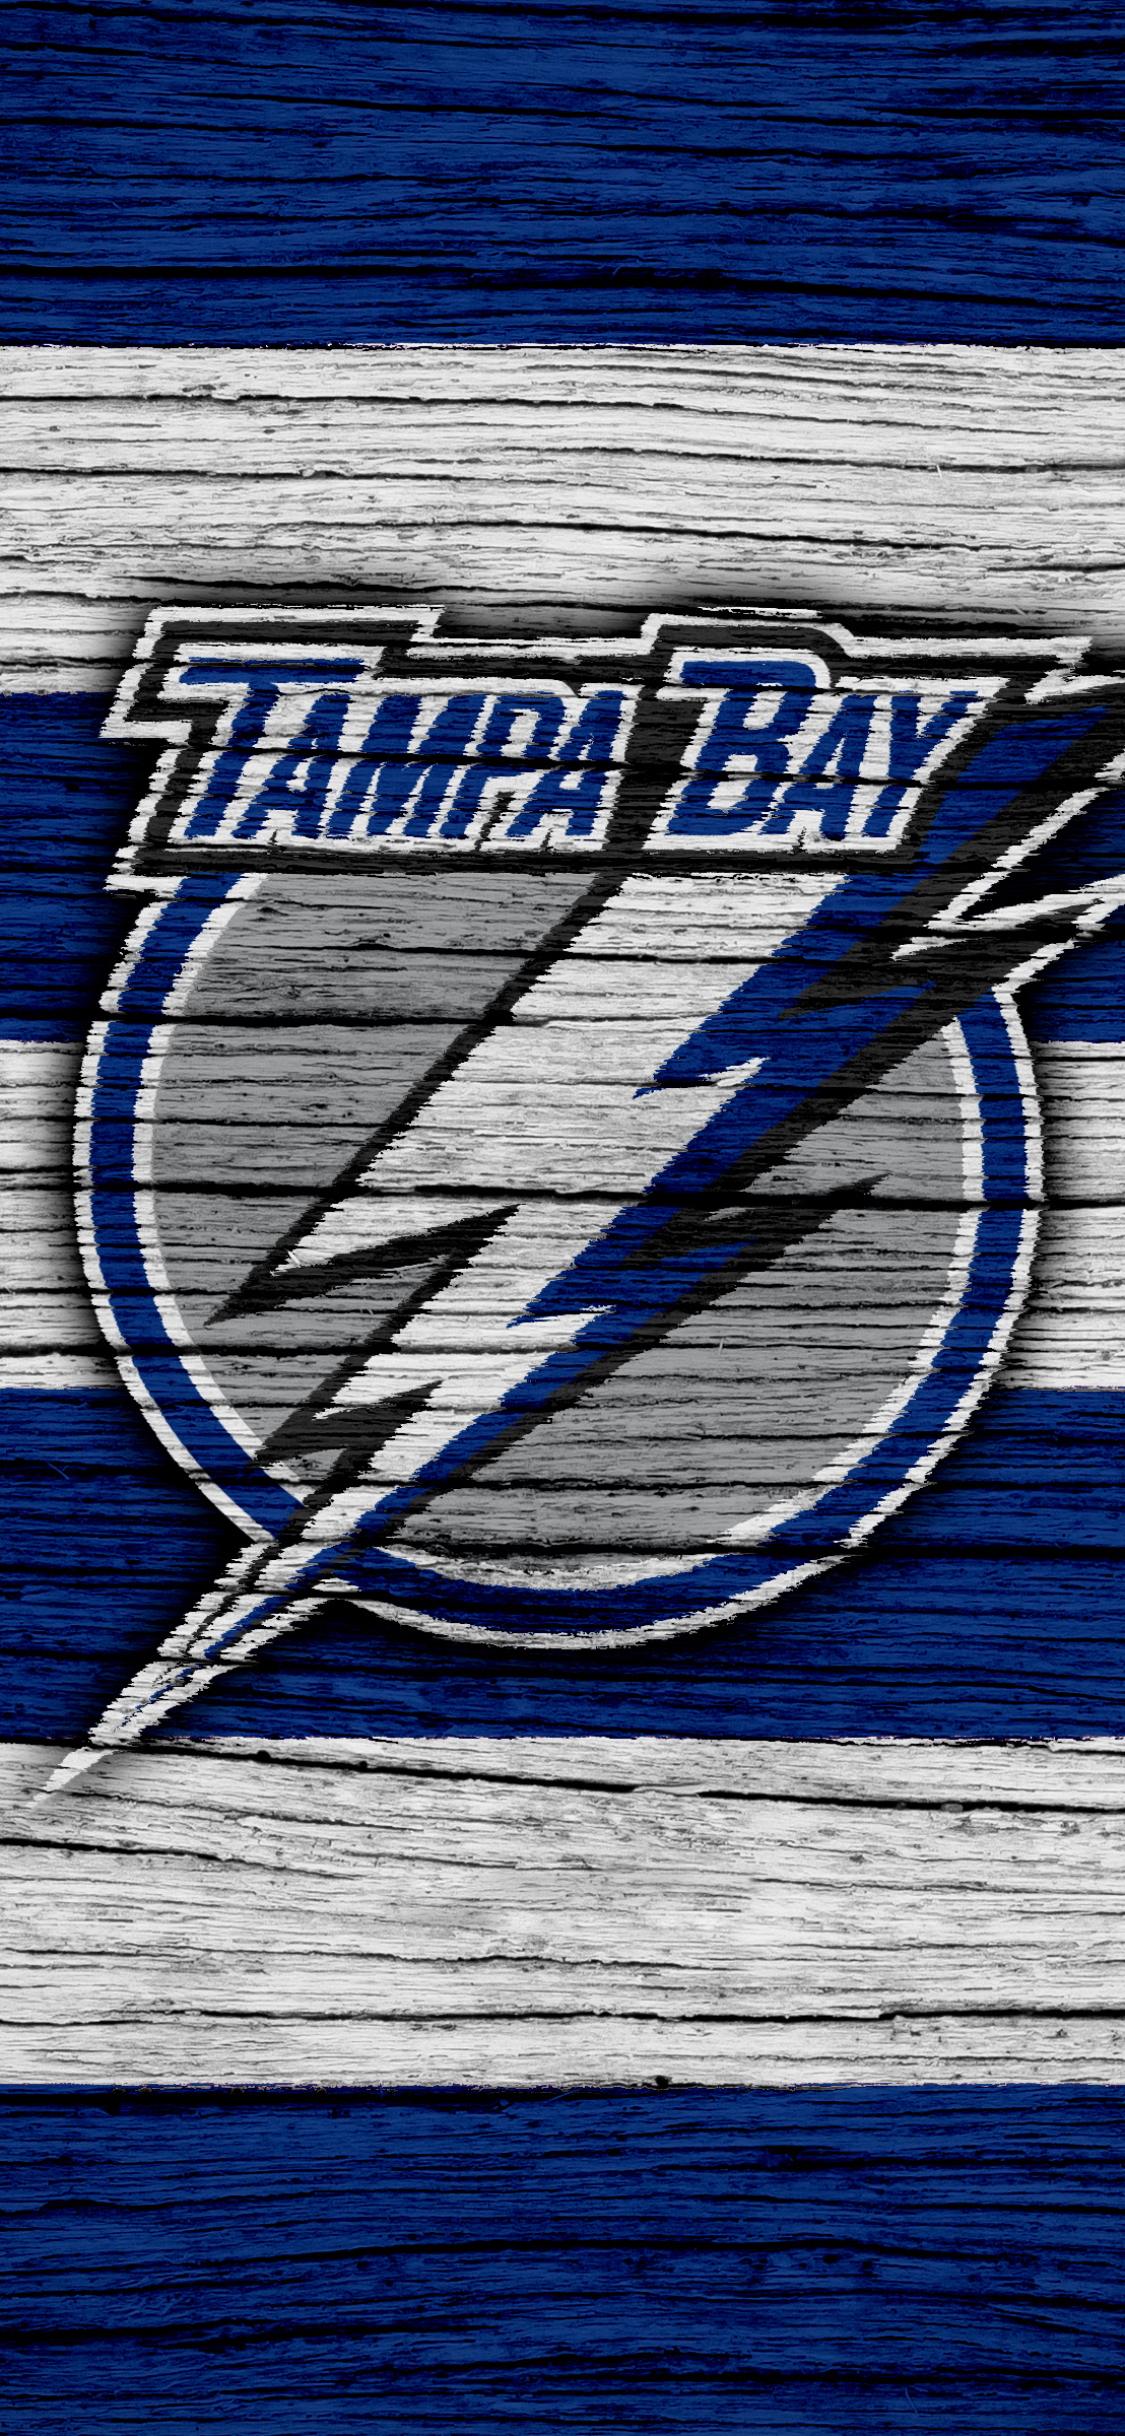 200+] Tampa Bay Lightning Wallpapers